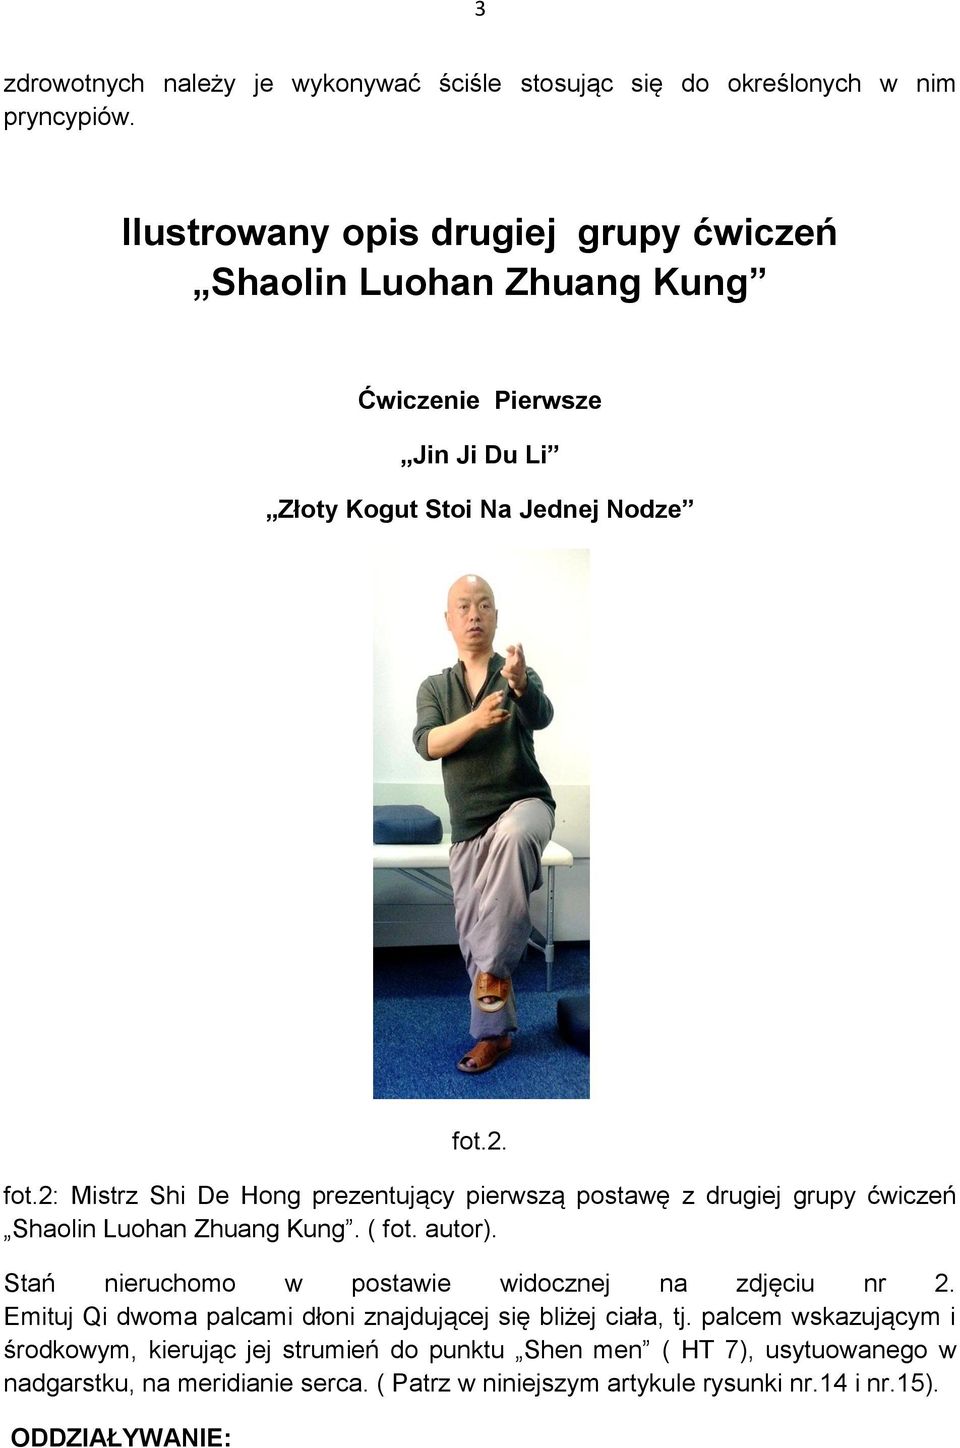 2. fot.2: Mistrz Shi De Hong prezentujący pierwszą postawę z drugiej grupy ćwiczeń Shaolin Luohan Zhuang Kung. ( fot. autor).